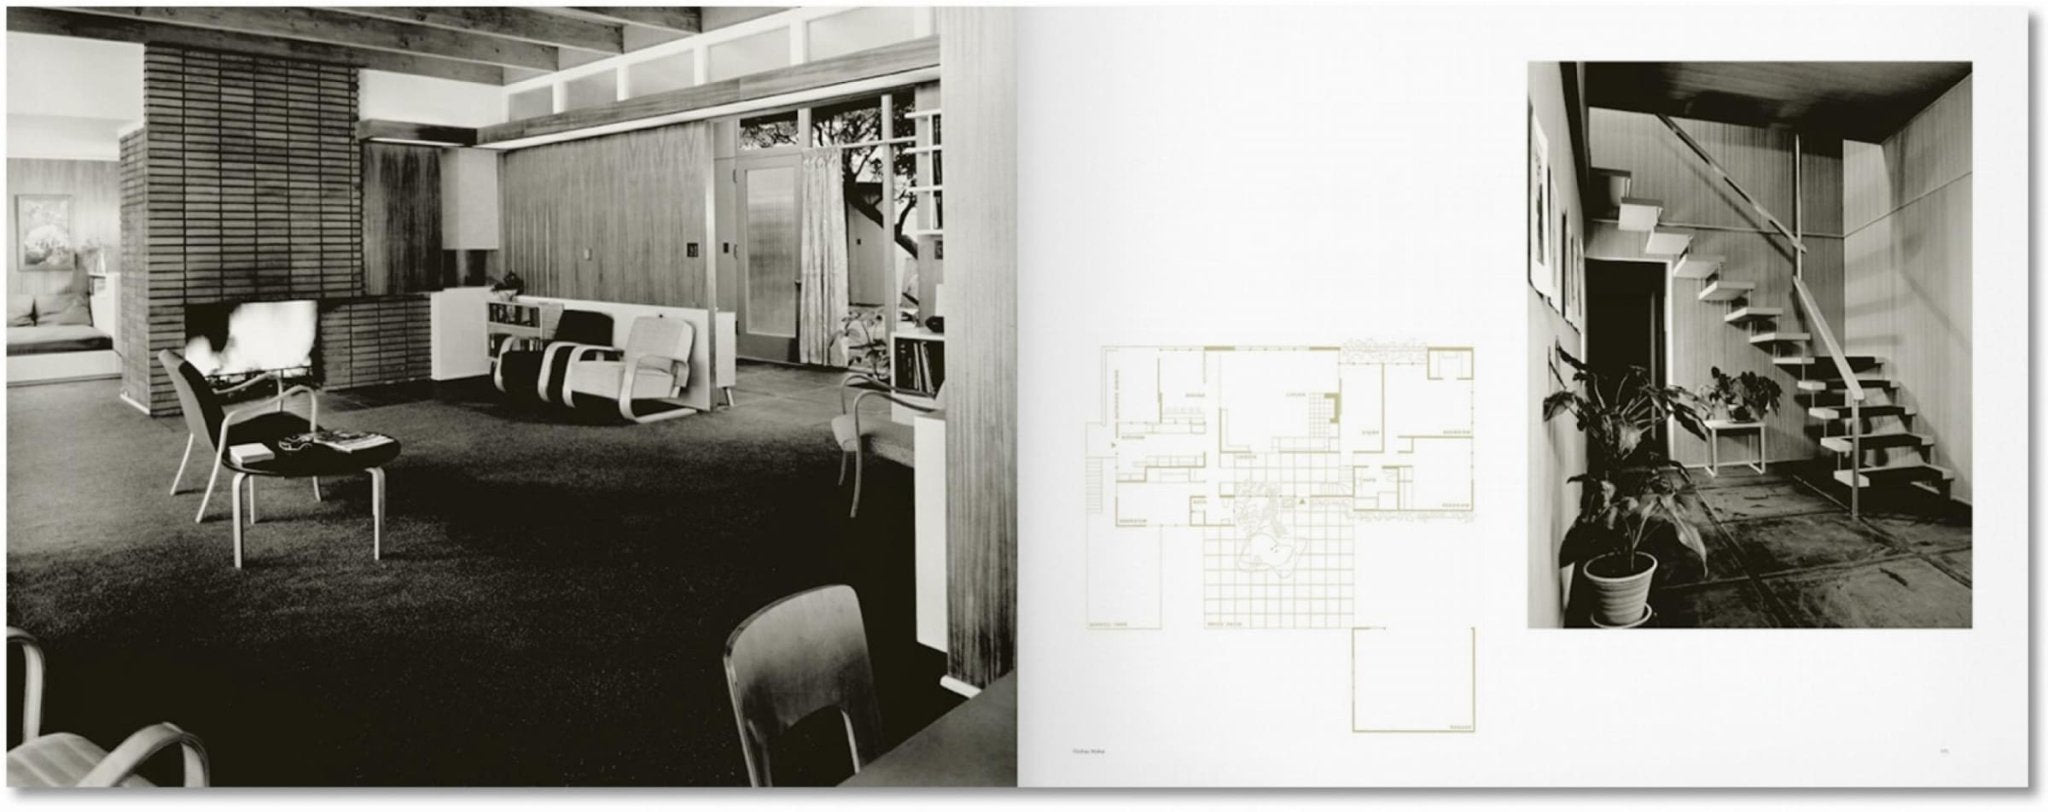 Case Study Houses. The Complete CSH Program 1945-1966 Sachbücher von Taschen Verlag